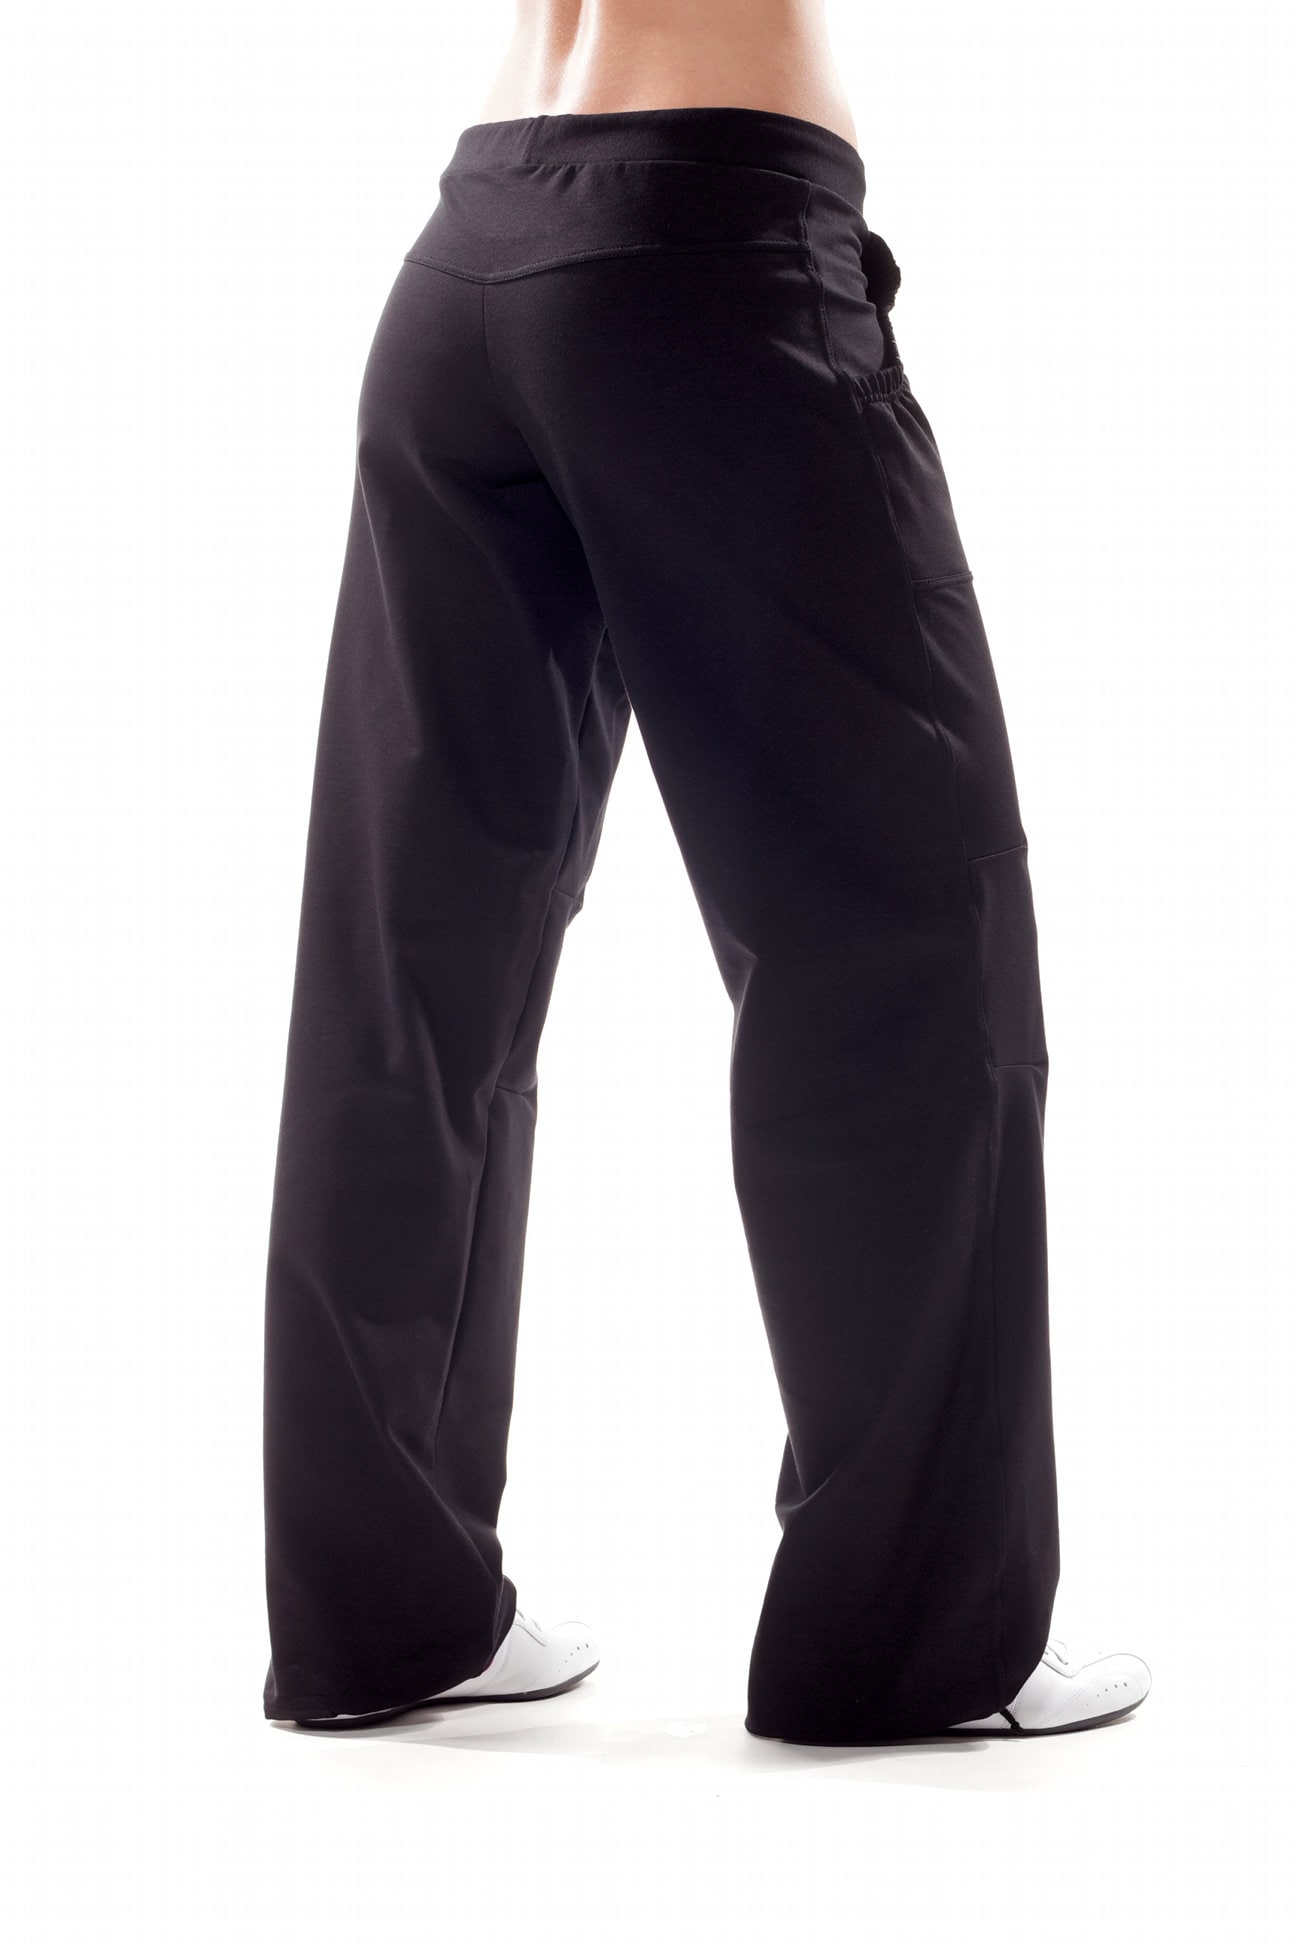 Winshape Sportinės kelnės »WTE9« All-Fit Style